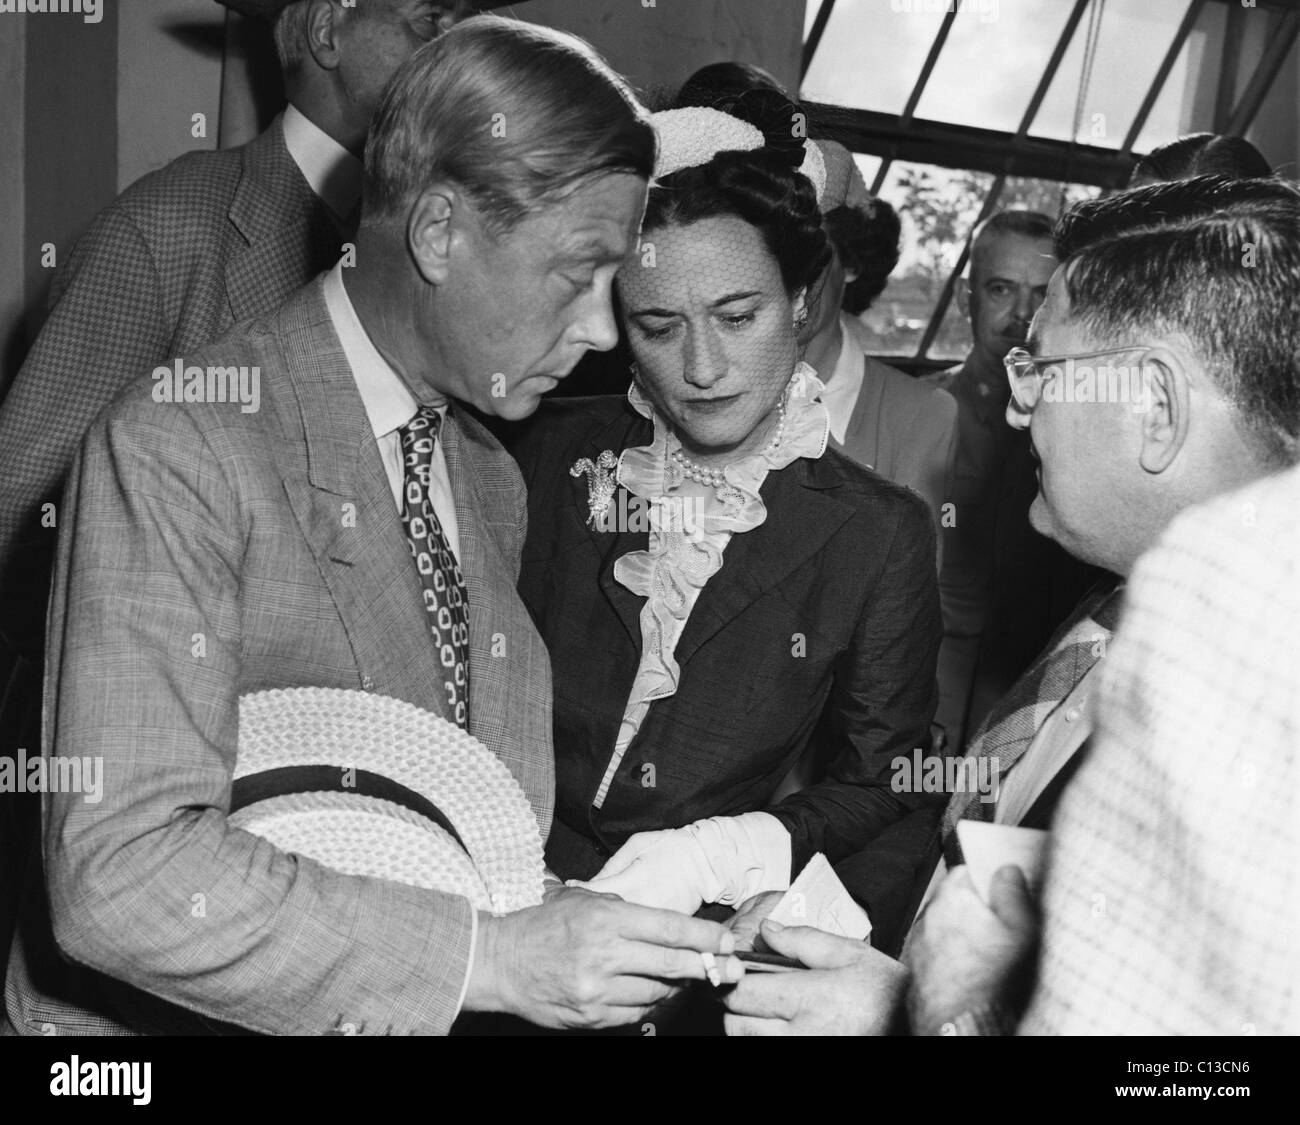 De gauche à droite : le prince Edward, duc de Windsor et de la Duchesse de Windsor, Wallis Simpson recevoir leur passeport à partir de la police de Miami le capitaine E.W. Melohen à son arrivée à Miami, Floride, 1942. Banque D'Images